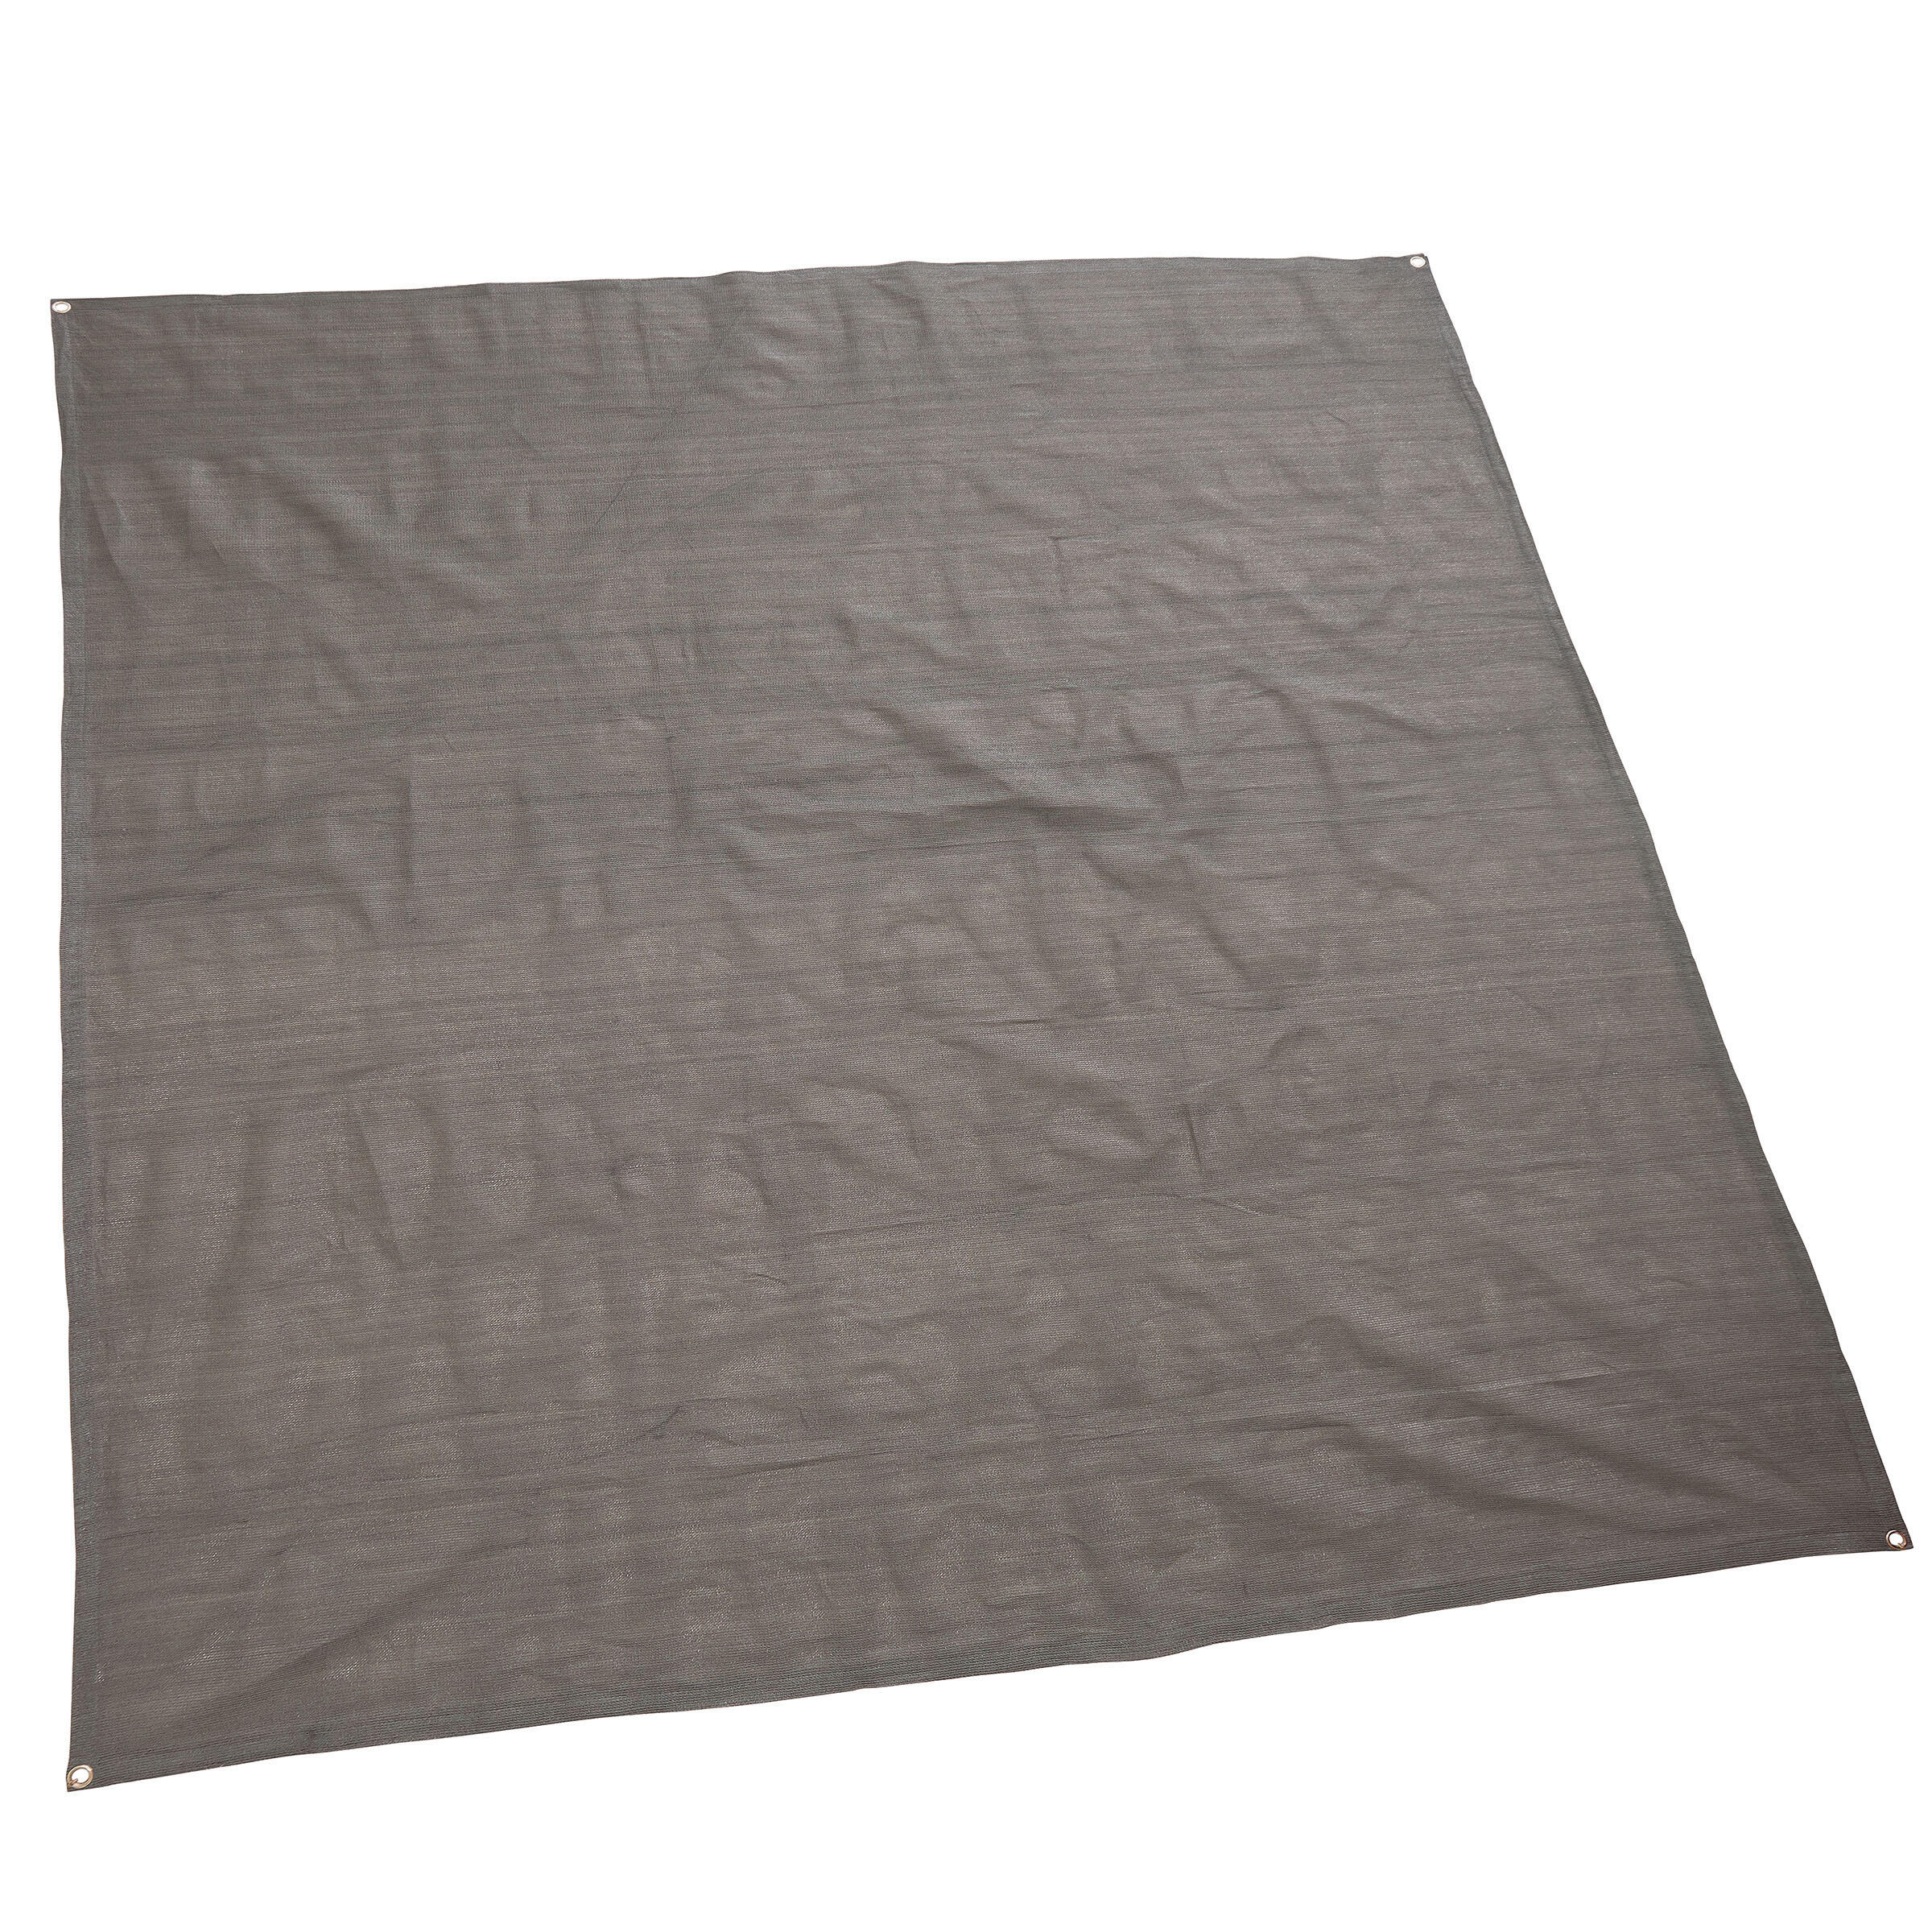 robusto tappeto da campeggio tappeto per tenda da campeggio colore blu/grigio 250 x 400 cm lavabile ONVAYA®